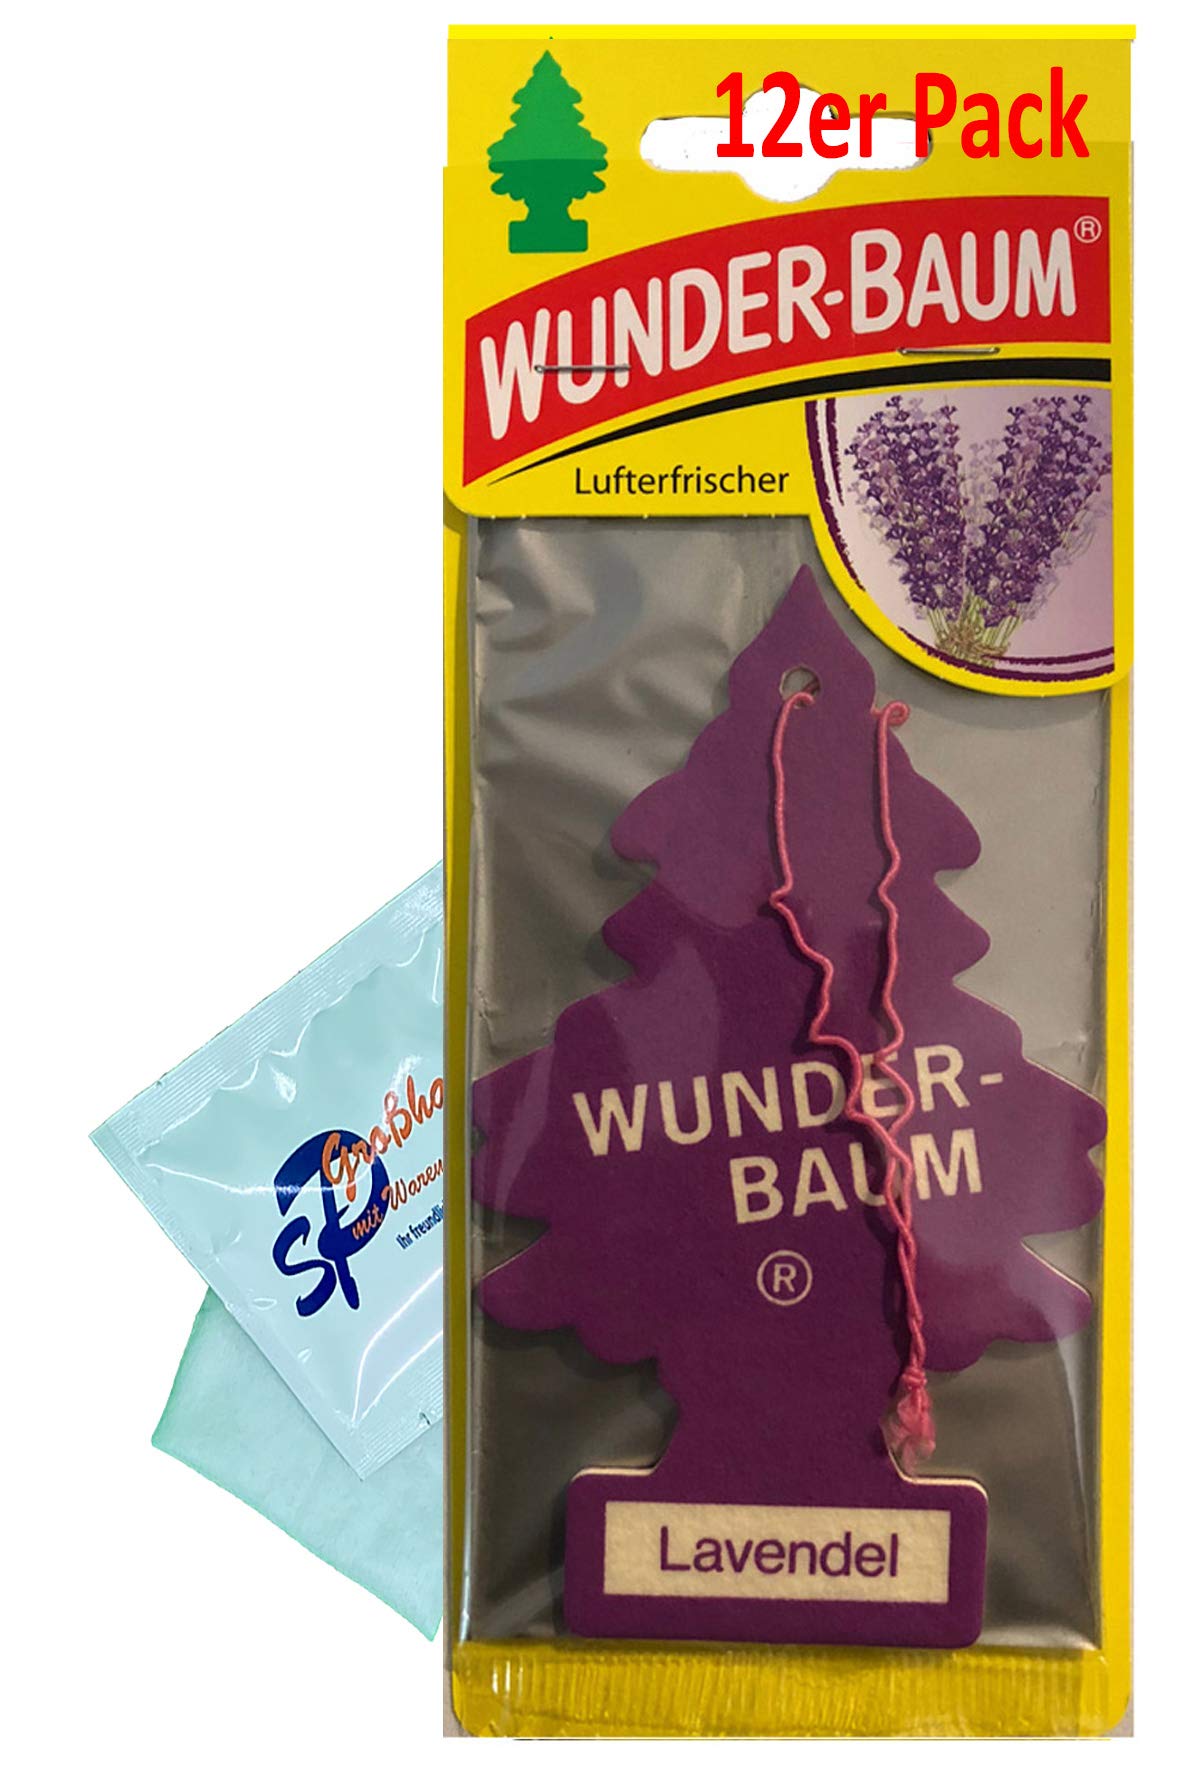 12 Stück Lavendel Wunder-Baum Lufterfrischer Duftbaum inkl. 1 x Glasreinigungstuch von SP Großhandel Gratiszugabe (Lavendel) von Wunderbaum